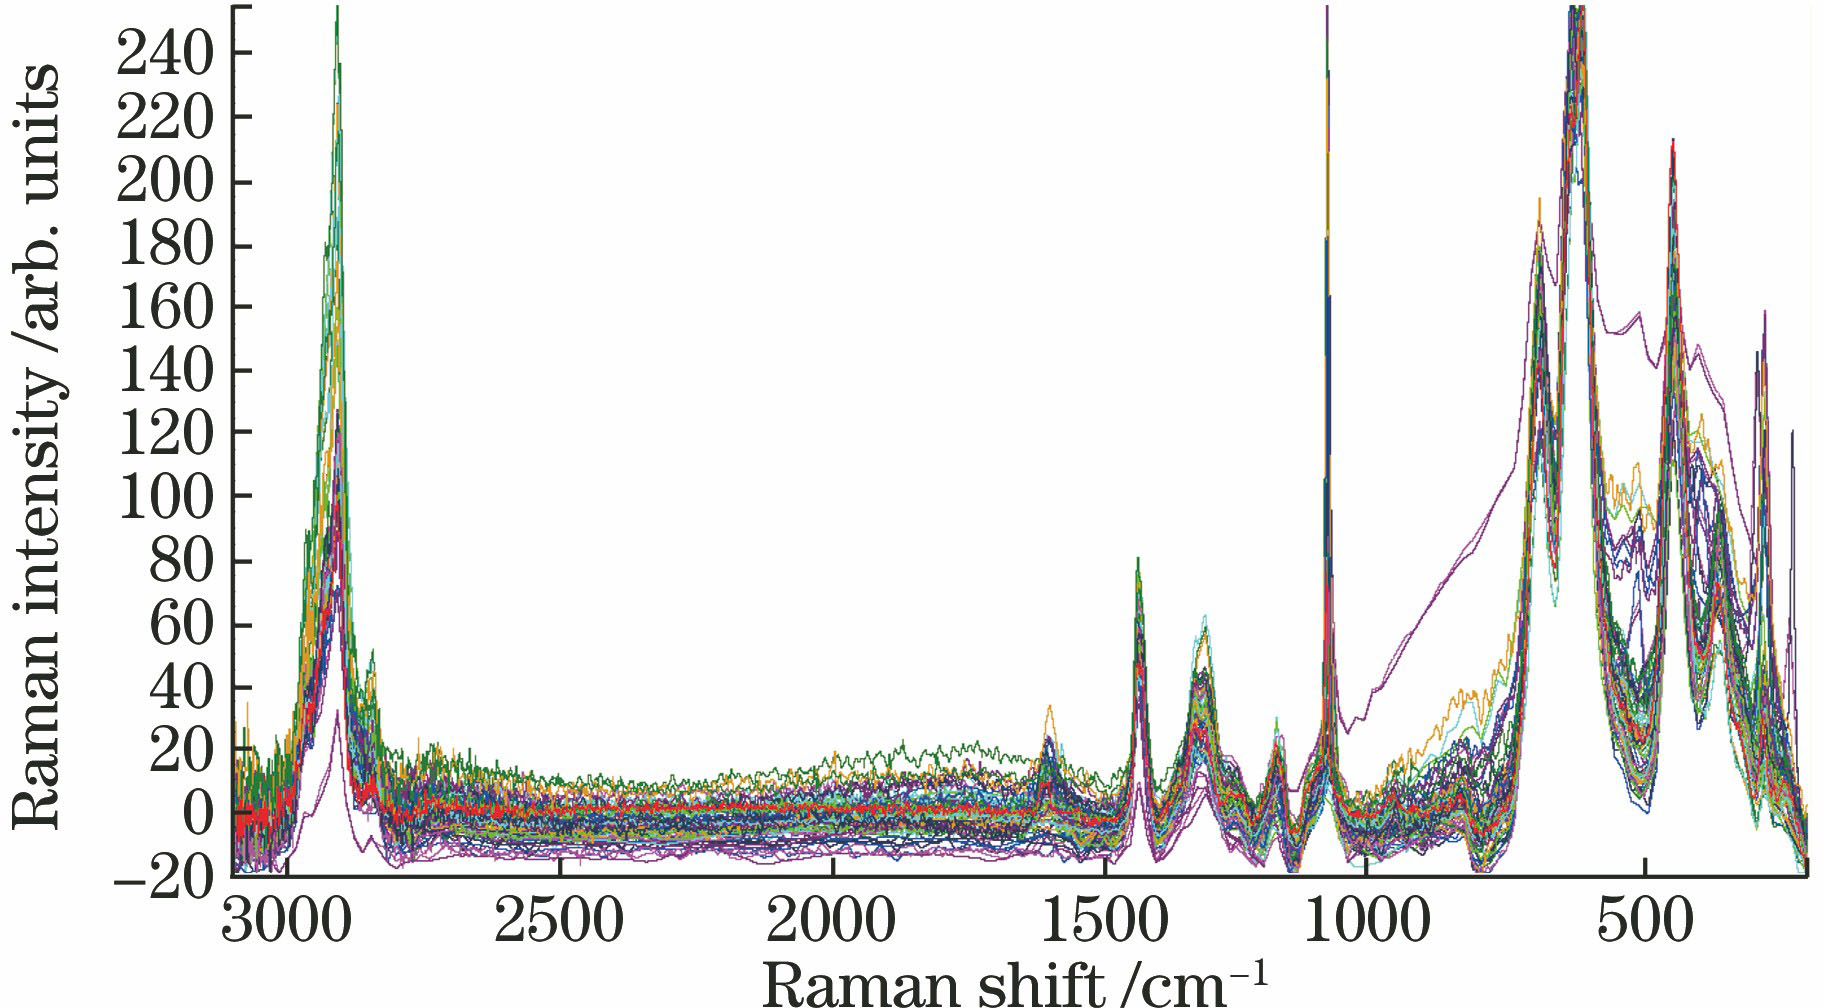 Raman spectra of 23 samples